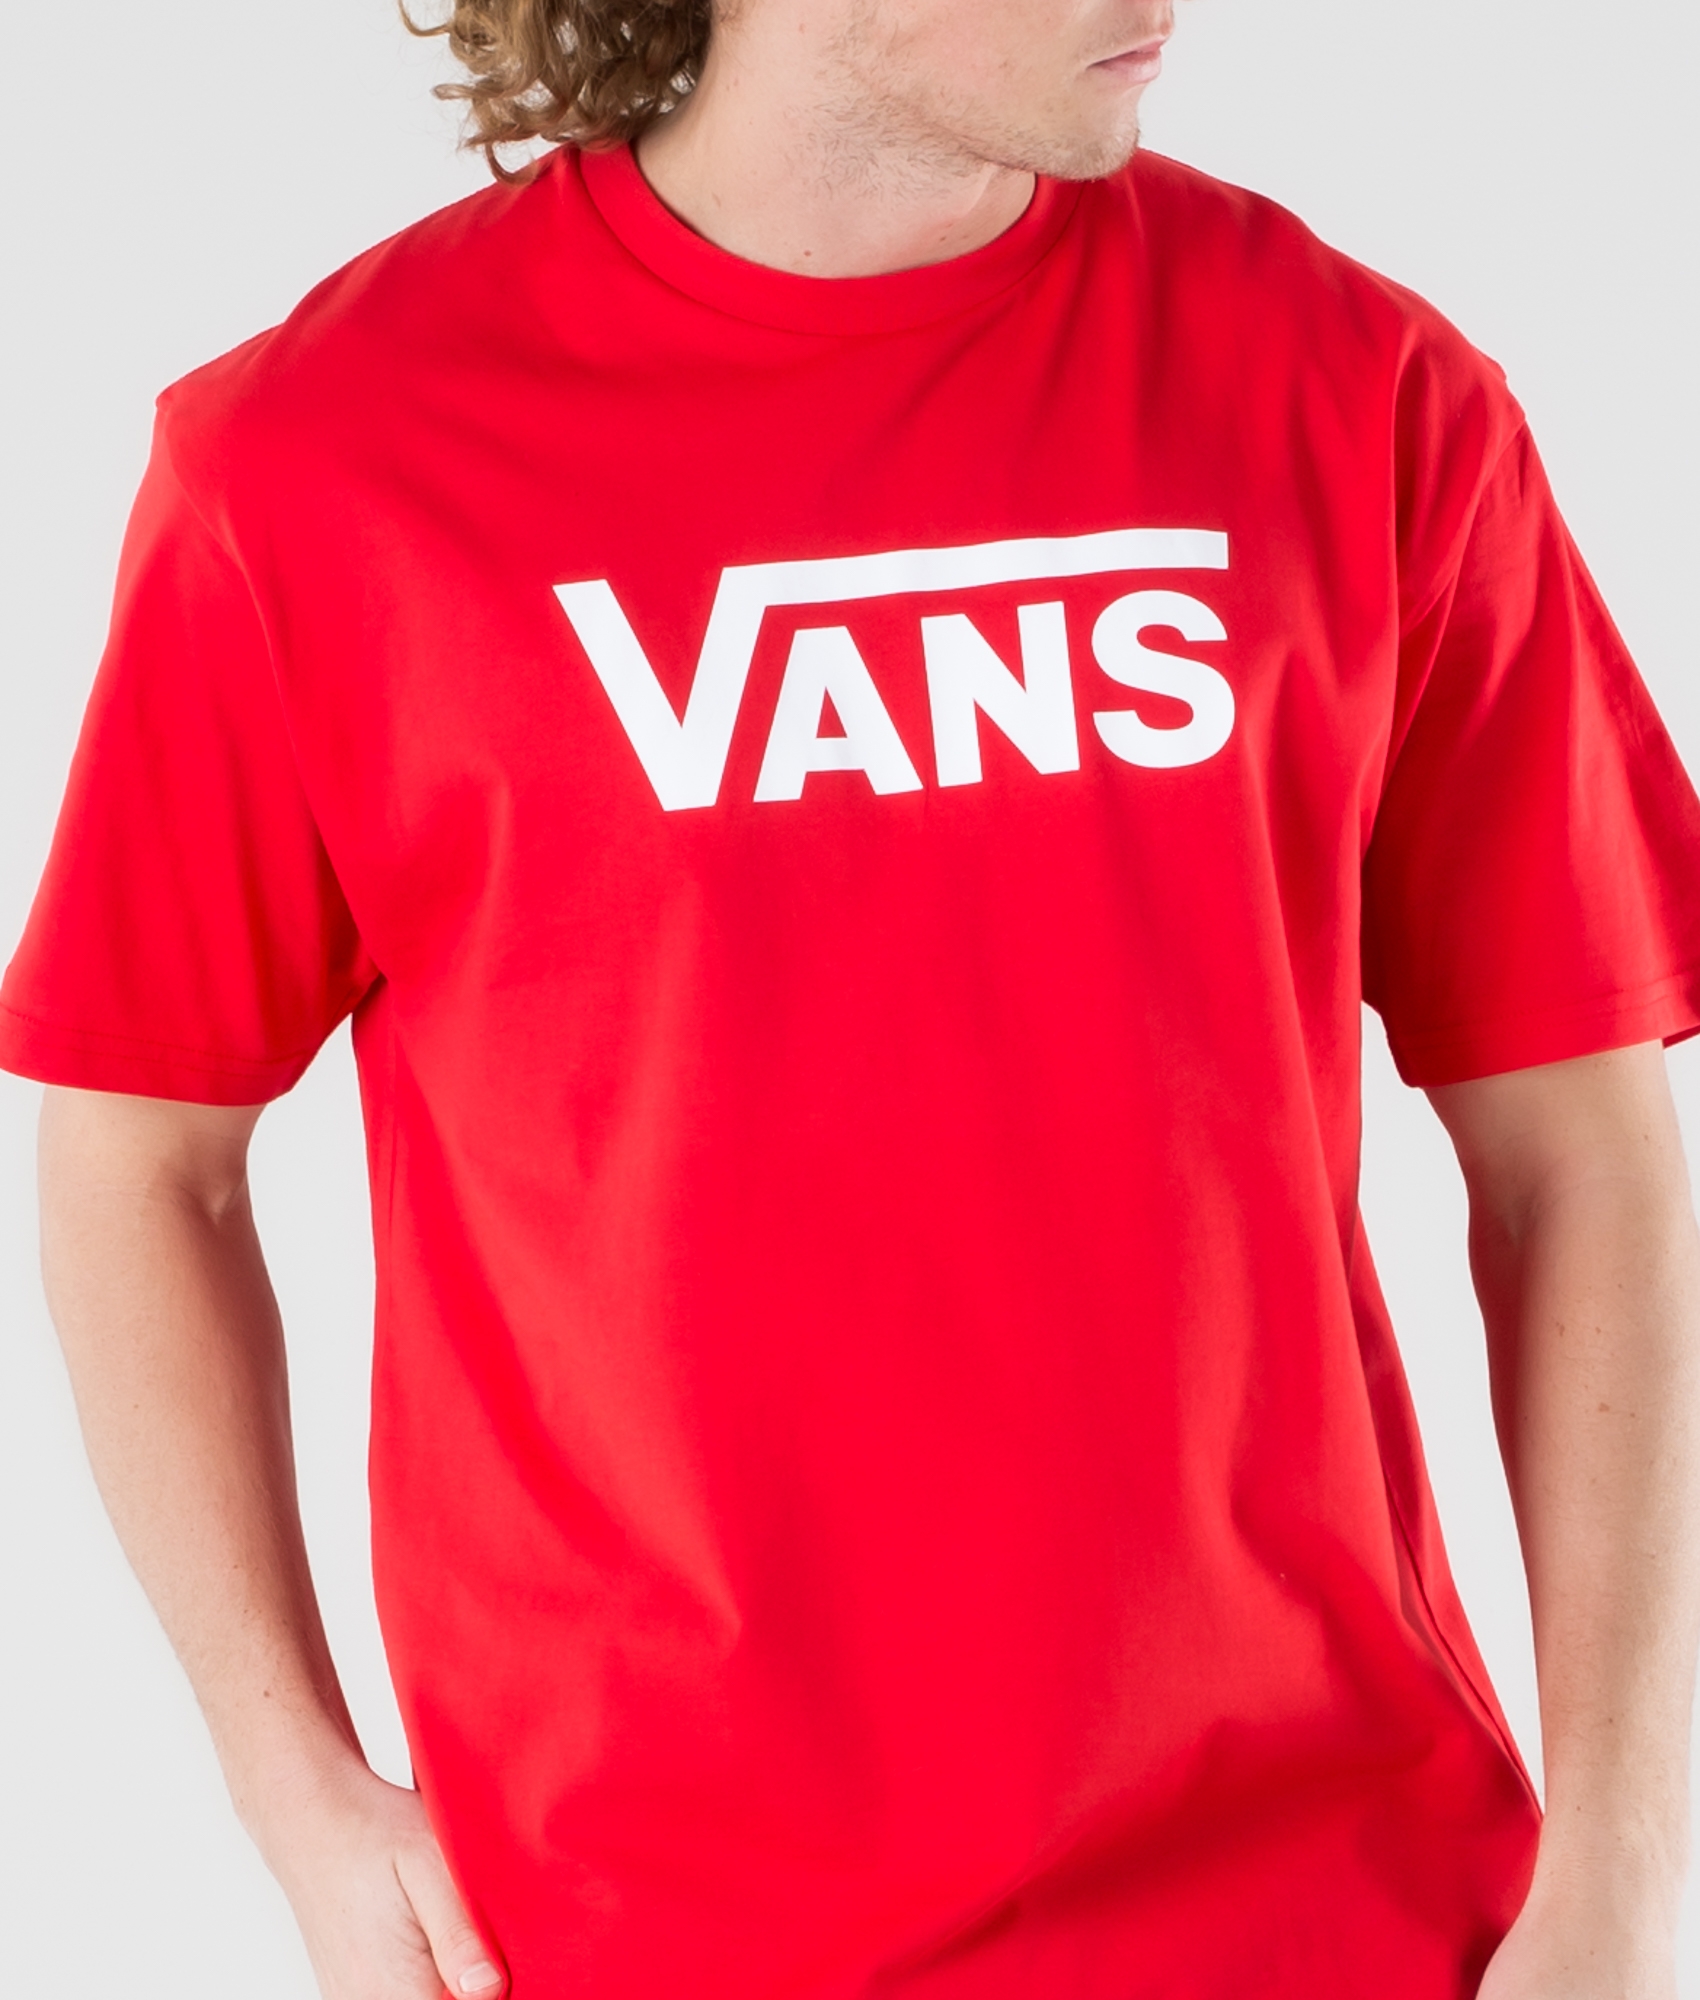 red and white van shirt